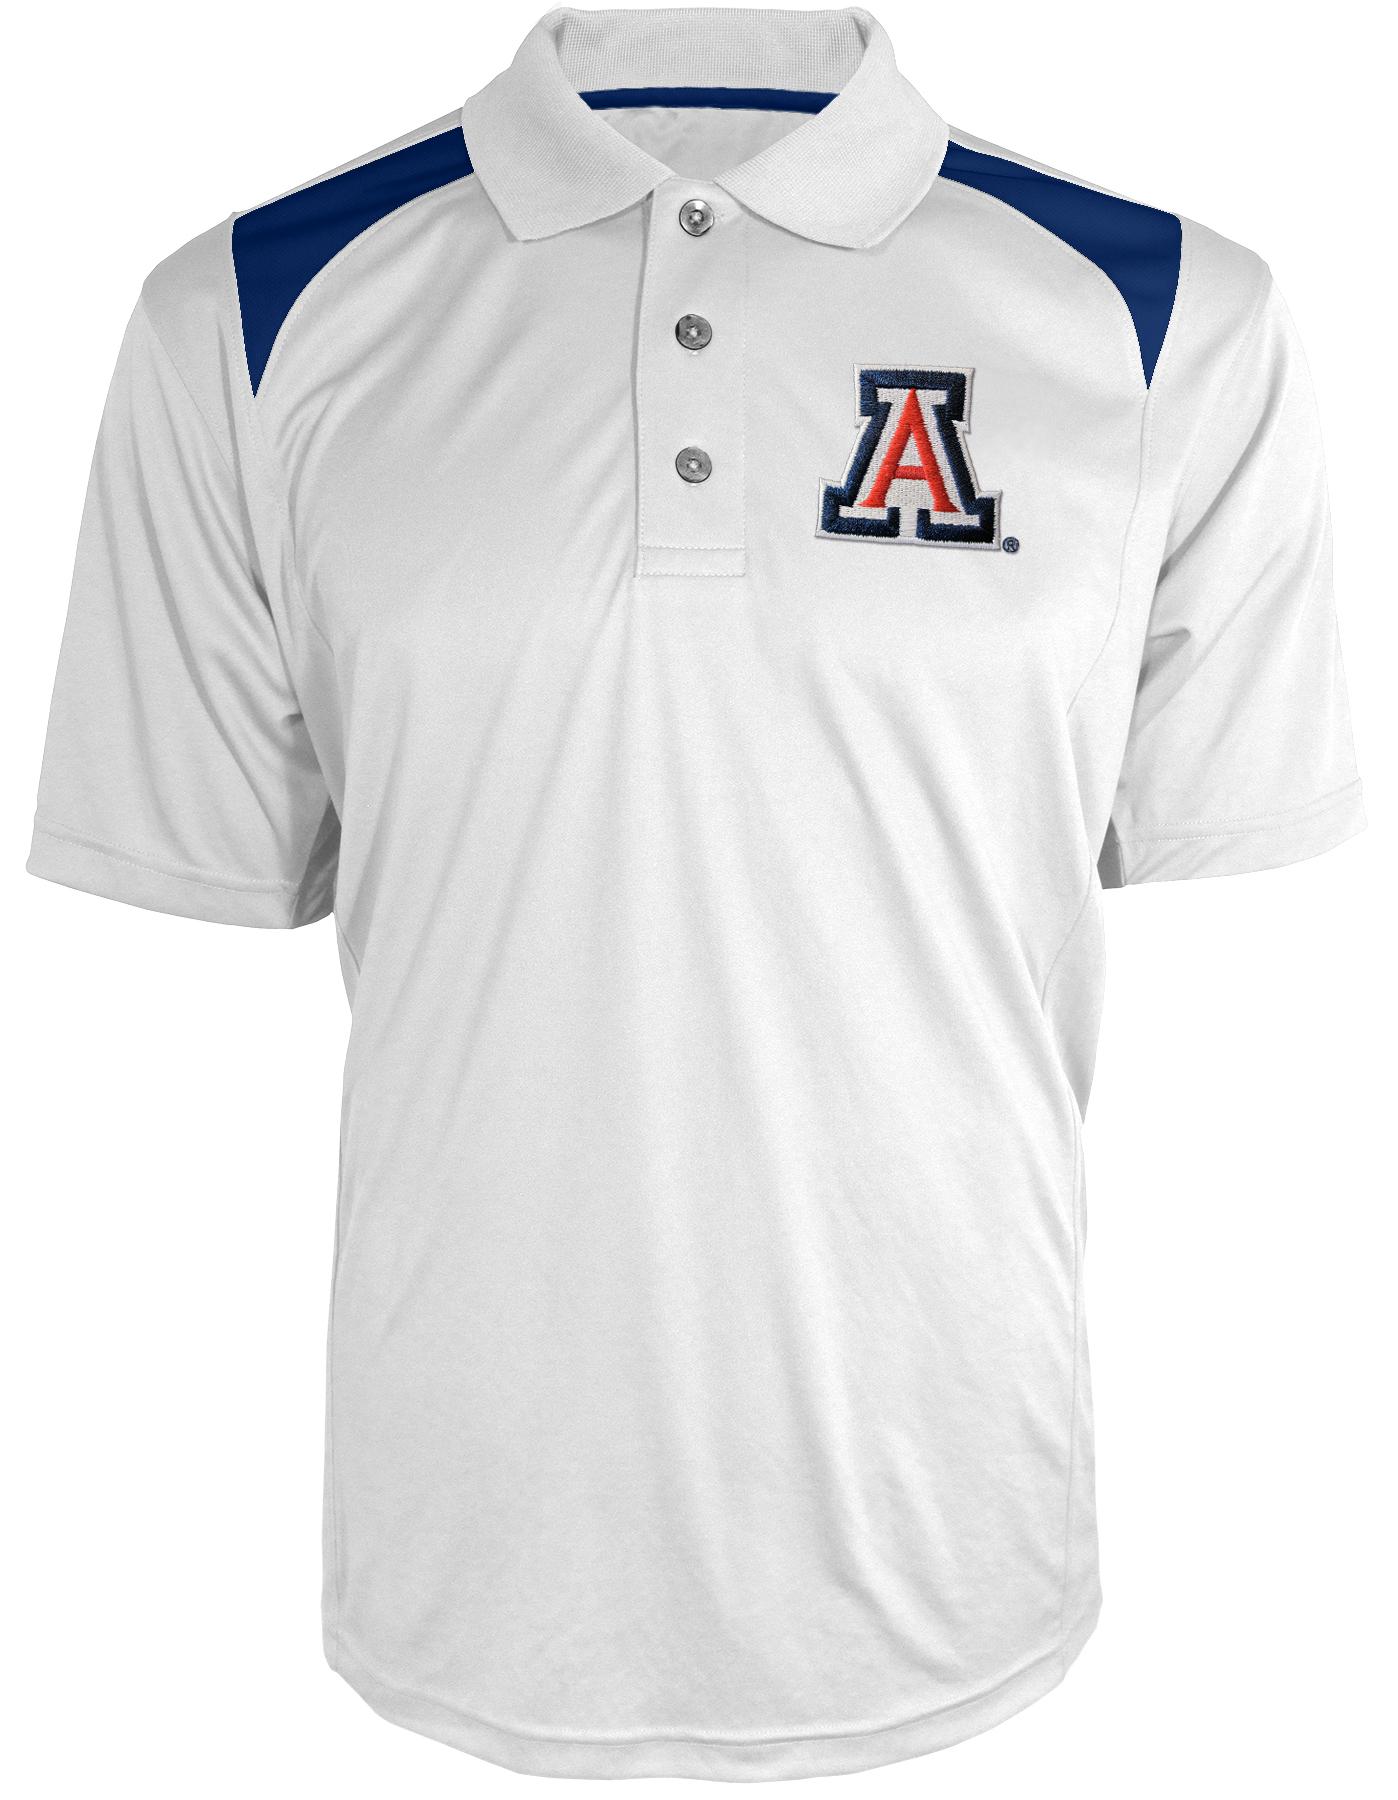 NCAA Men's Polo Shirt - University of Arizona